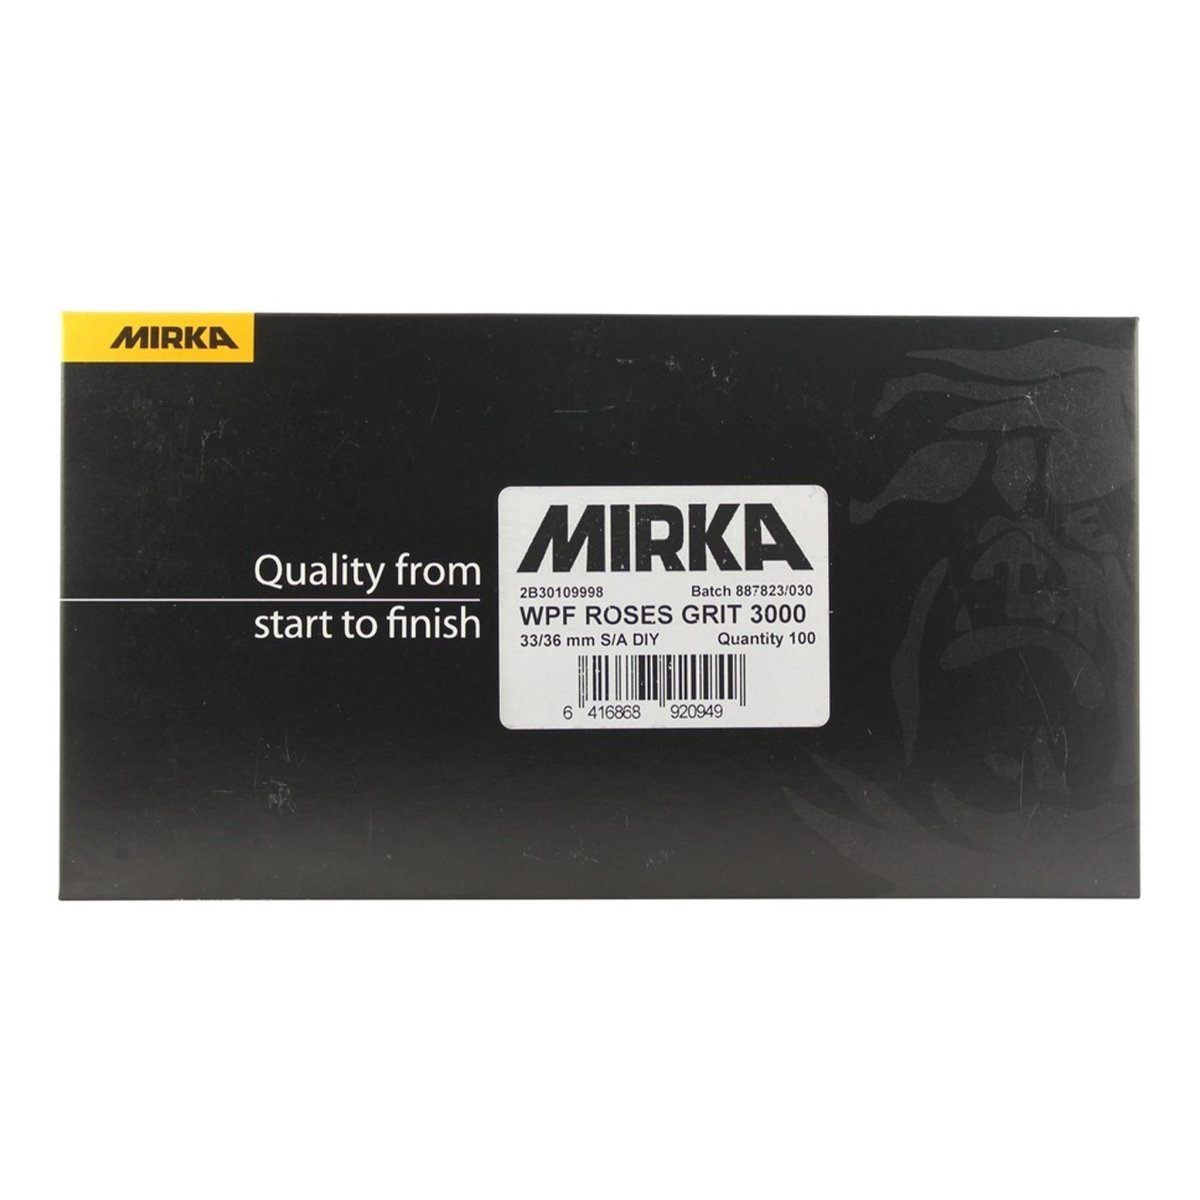 MIRKA Wasserfest-Latex WPF ROSES P 3000 Ø 33/36 mm 100 Stück - CLEANPRODUCTS